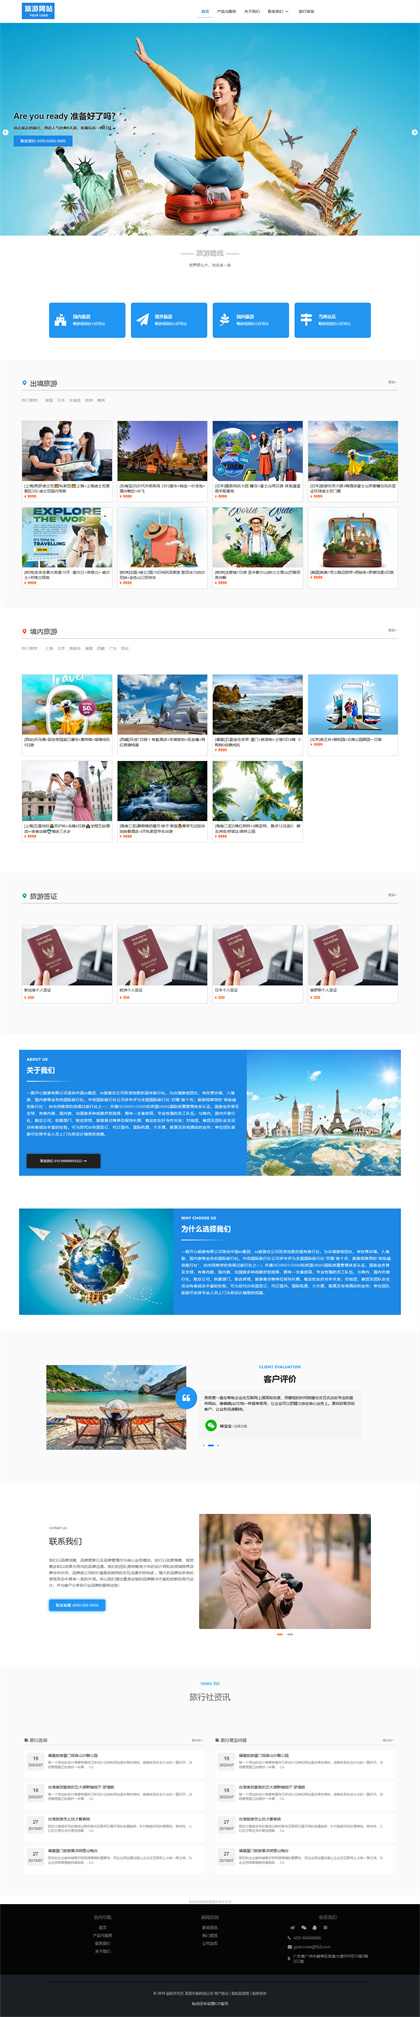 旅行社-旅游公司-旅行团-出境游公司-网站模板网站模板预览图片